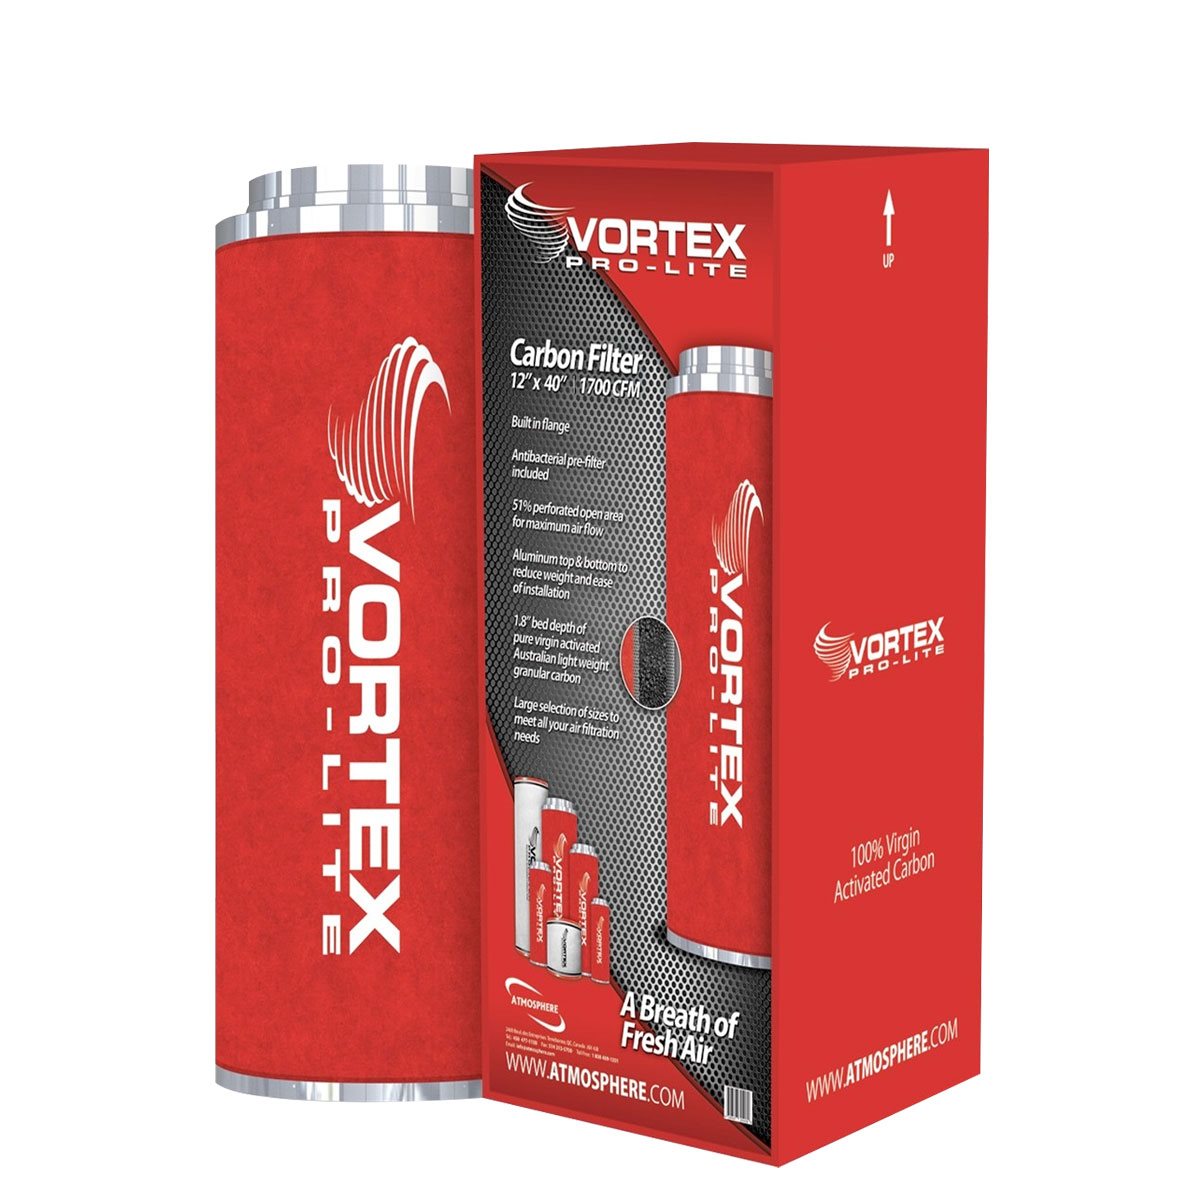 Vortex Pro-Lite Filter 6" x 16" (400 CFM)